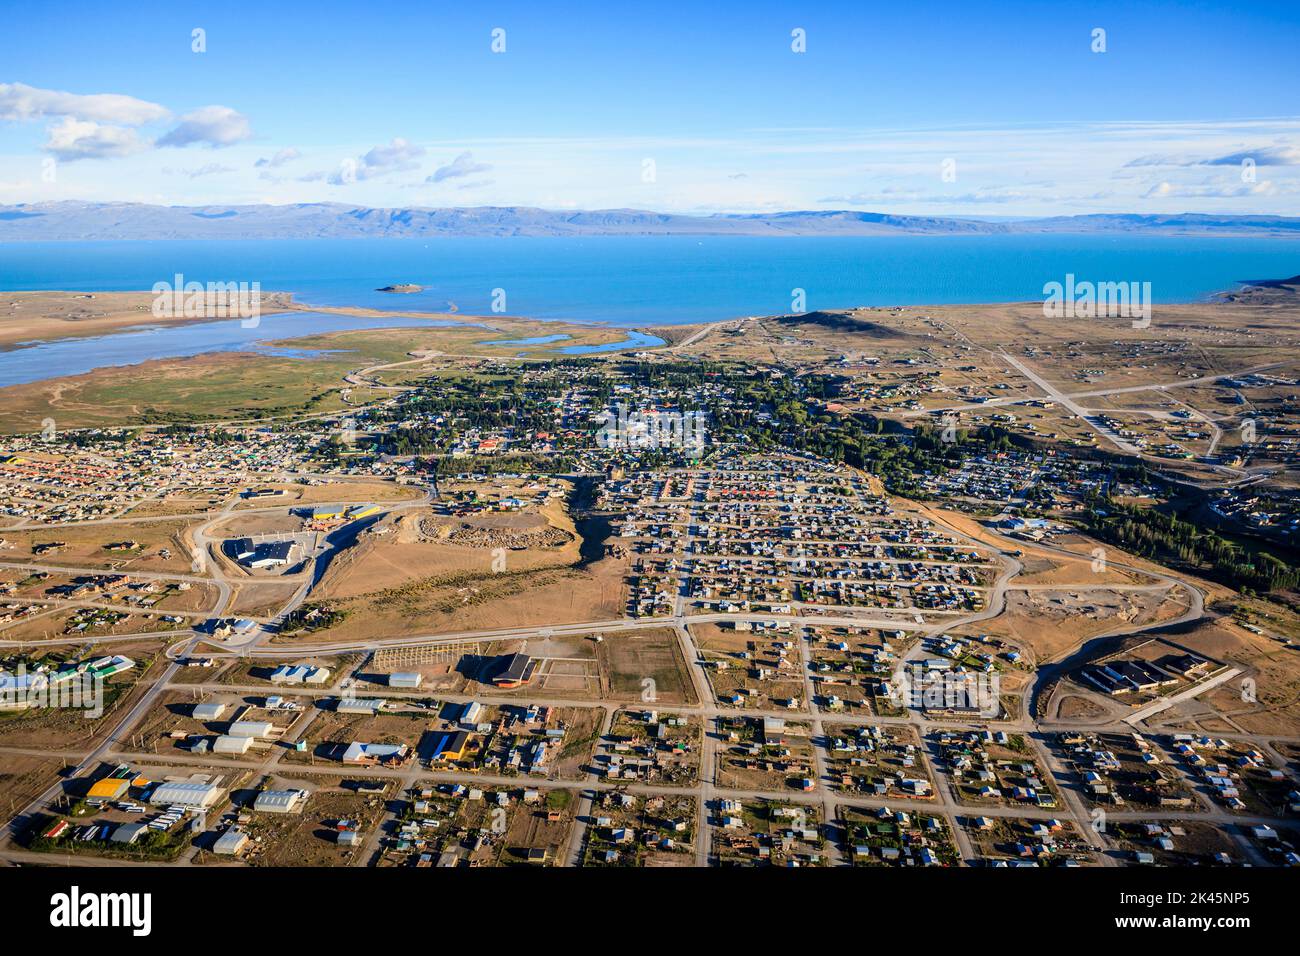 Luftaufnahme von El Calafate, einer weitläufigen Stadt an der Küste, einem Meereskanal, am Rande des südlichen patagonischen Eisfeldes. Stockfoto